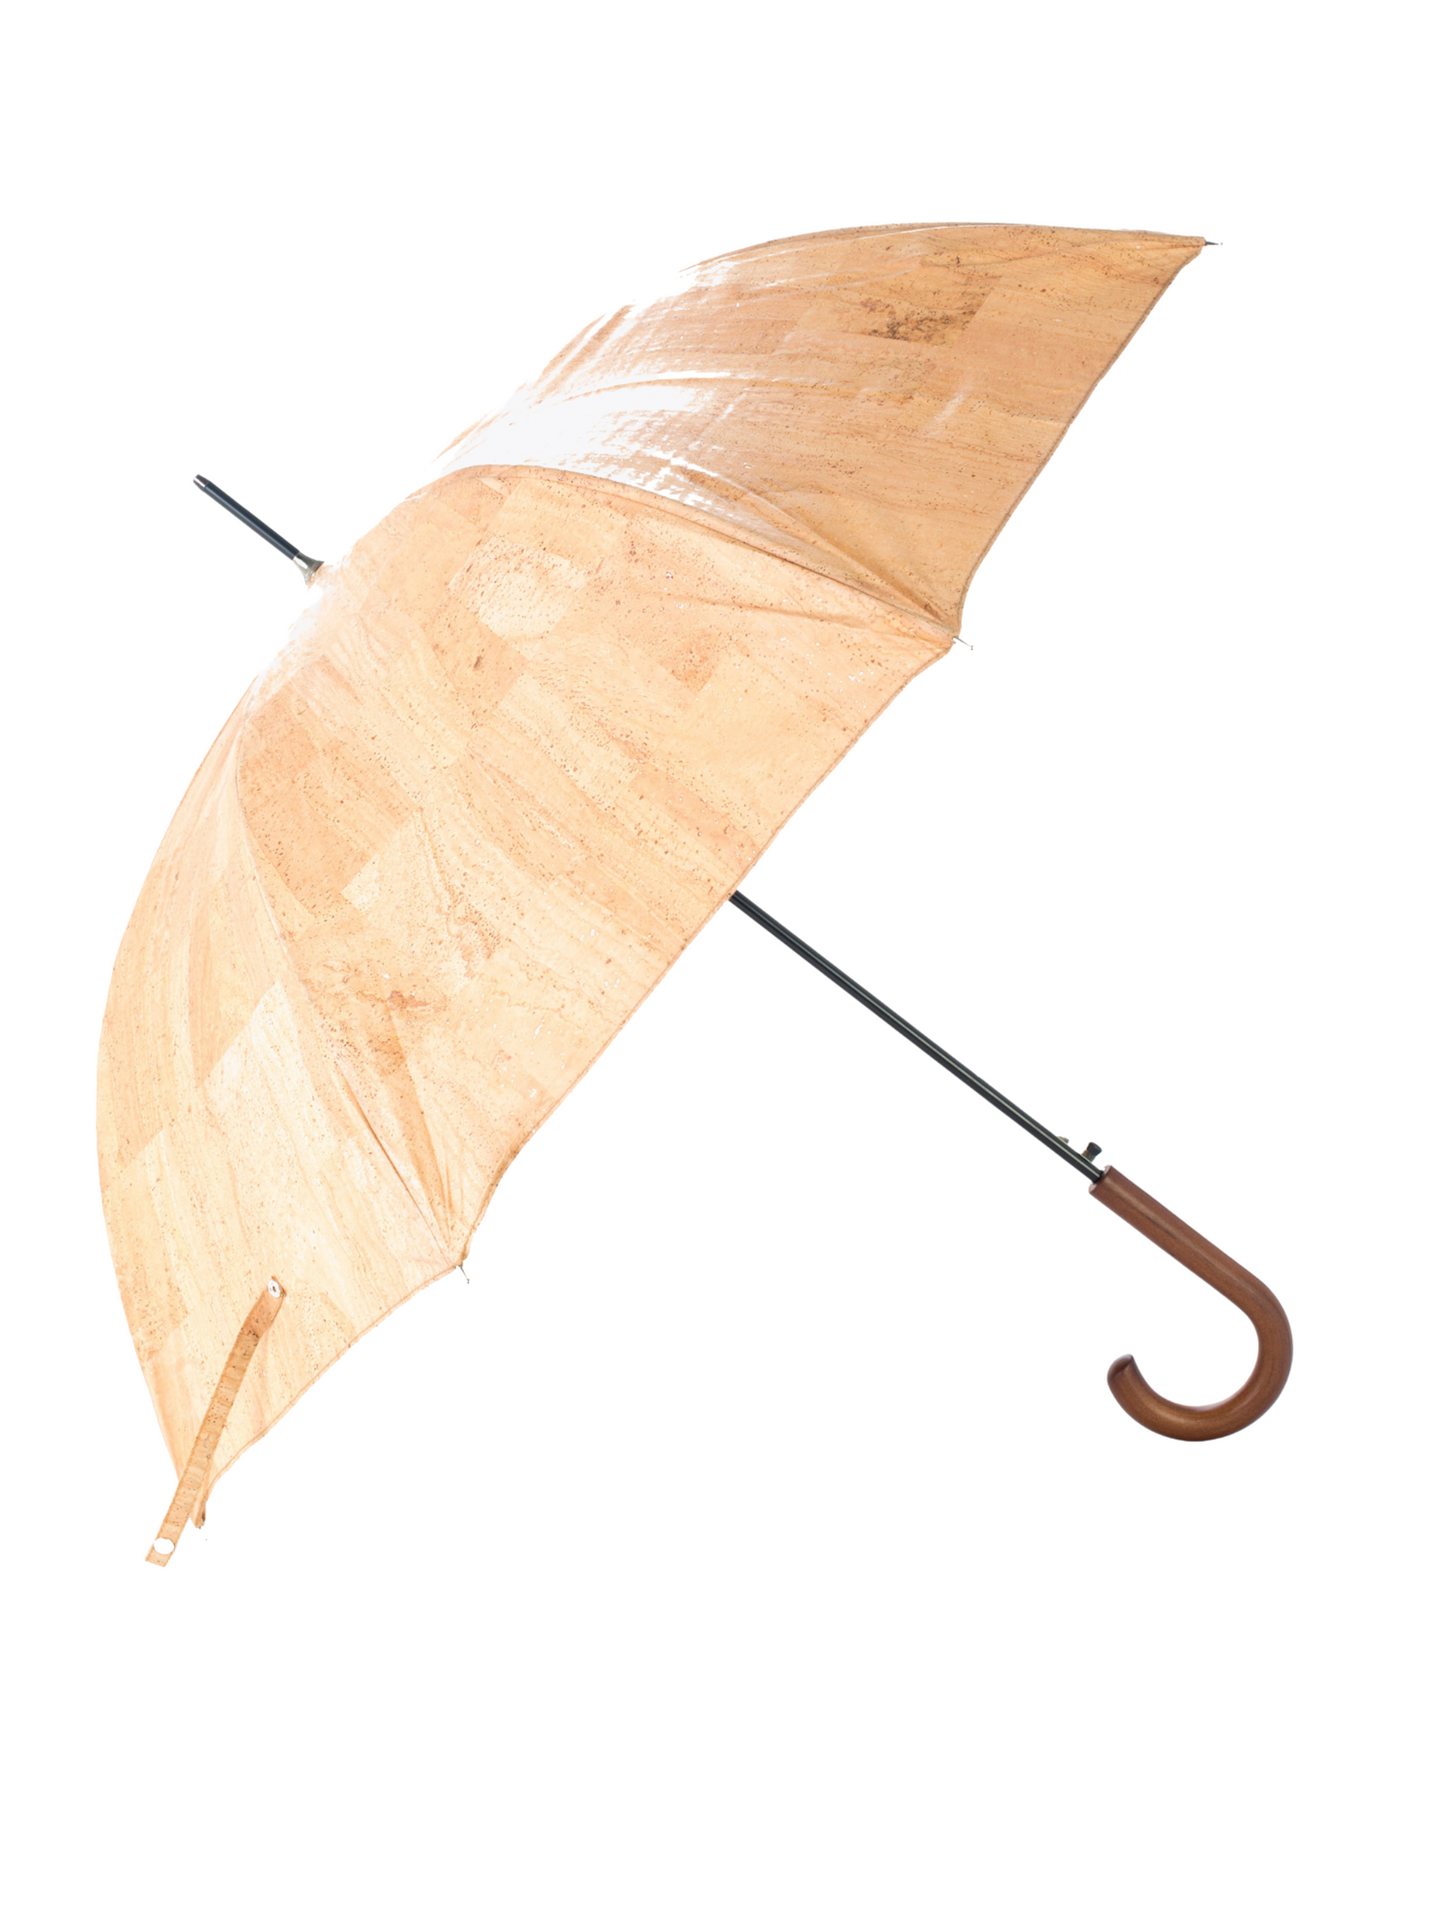 Artelusa Cork Umbrella - Beige - 9173.01-U27